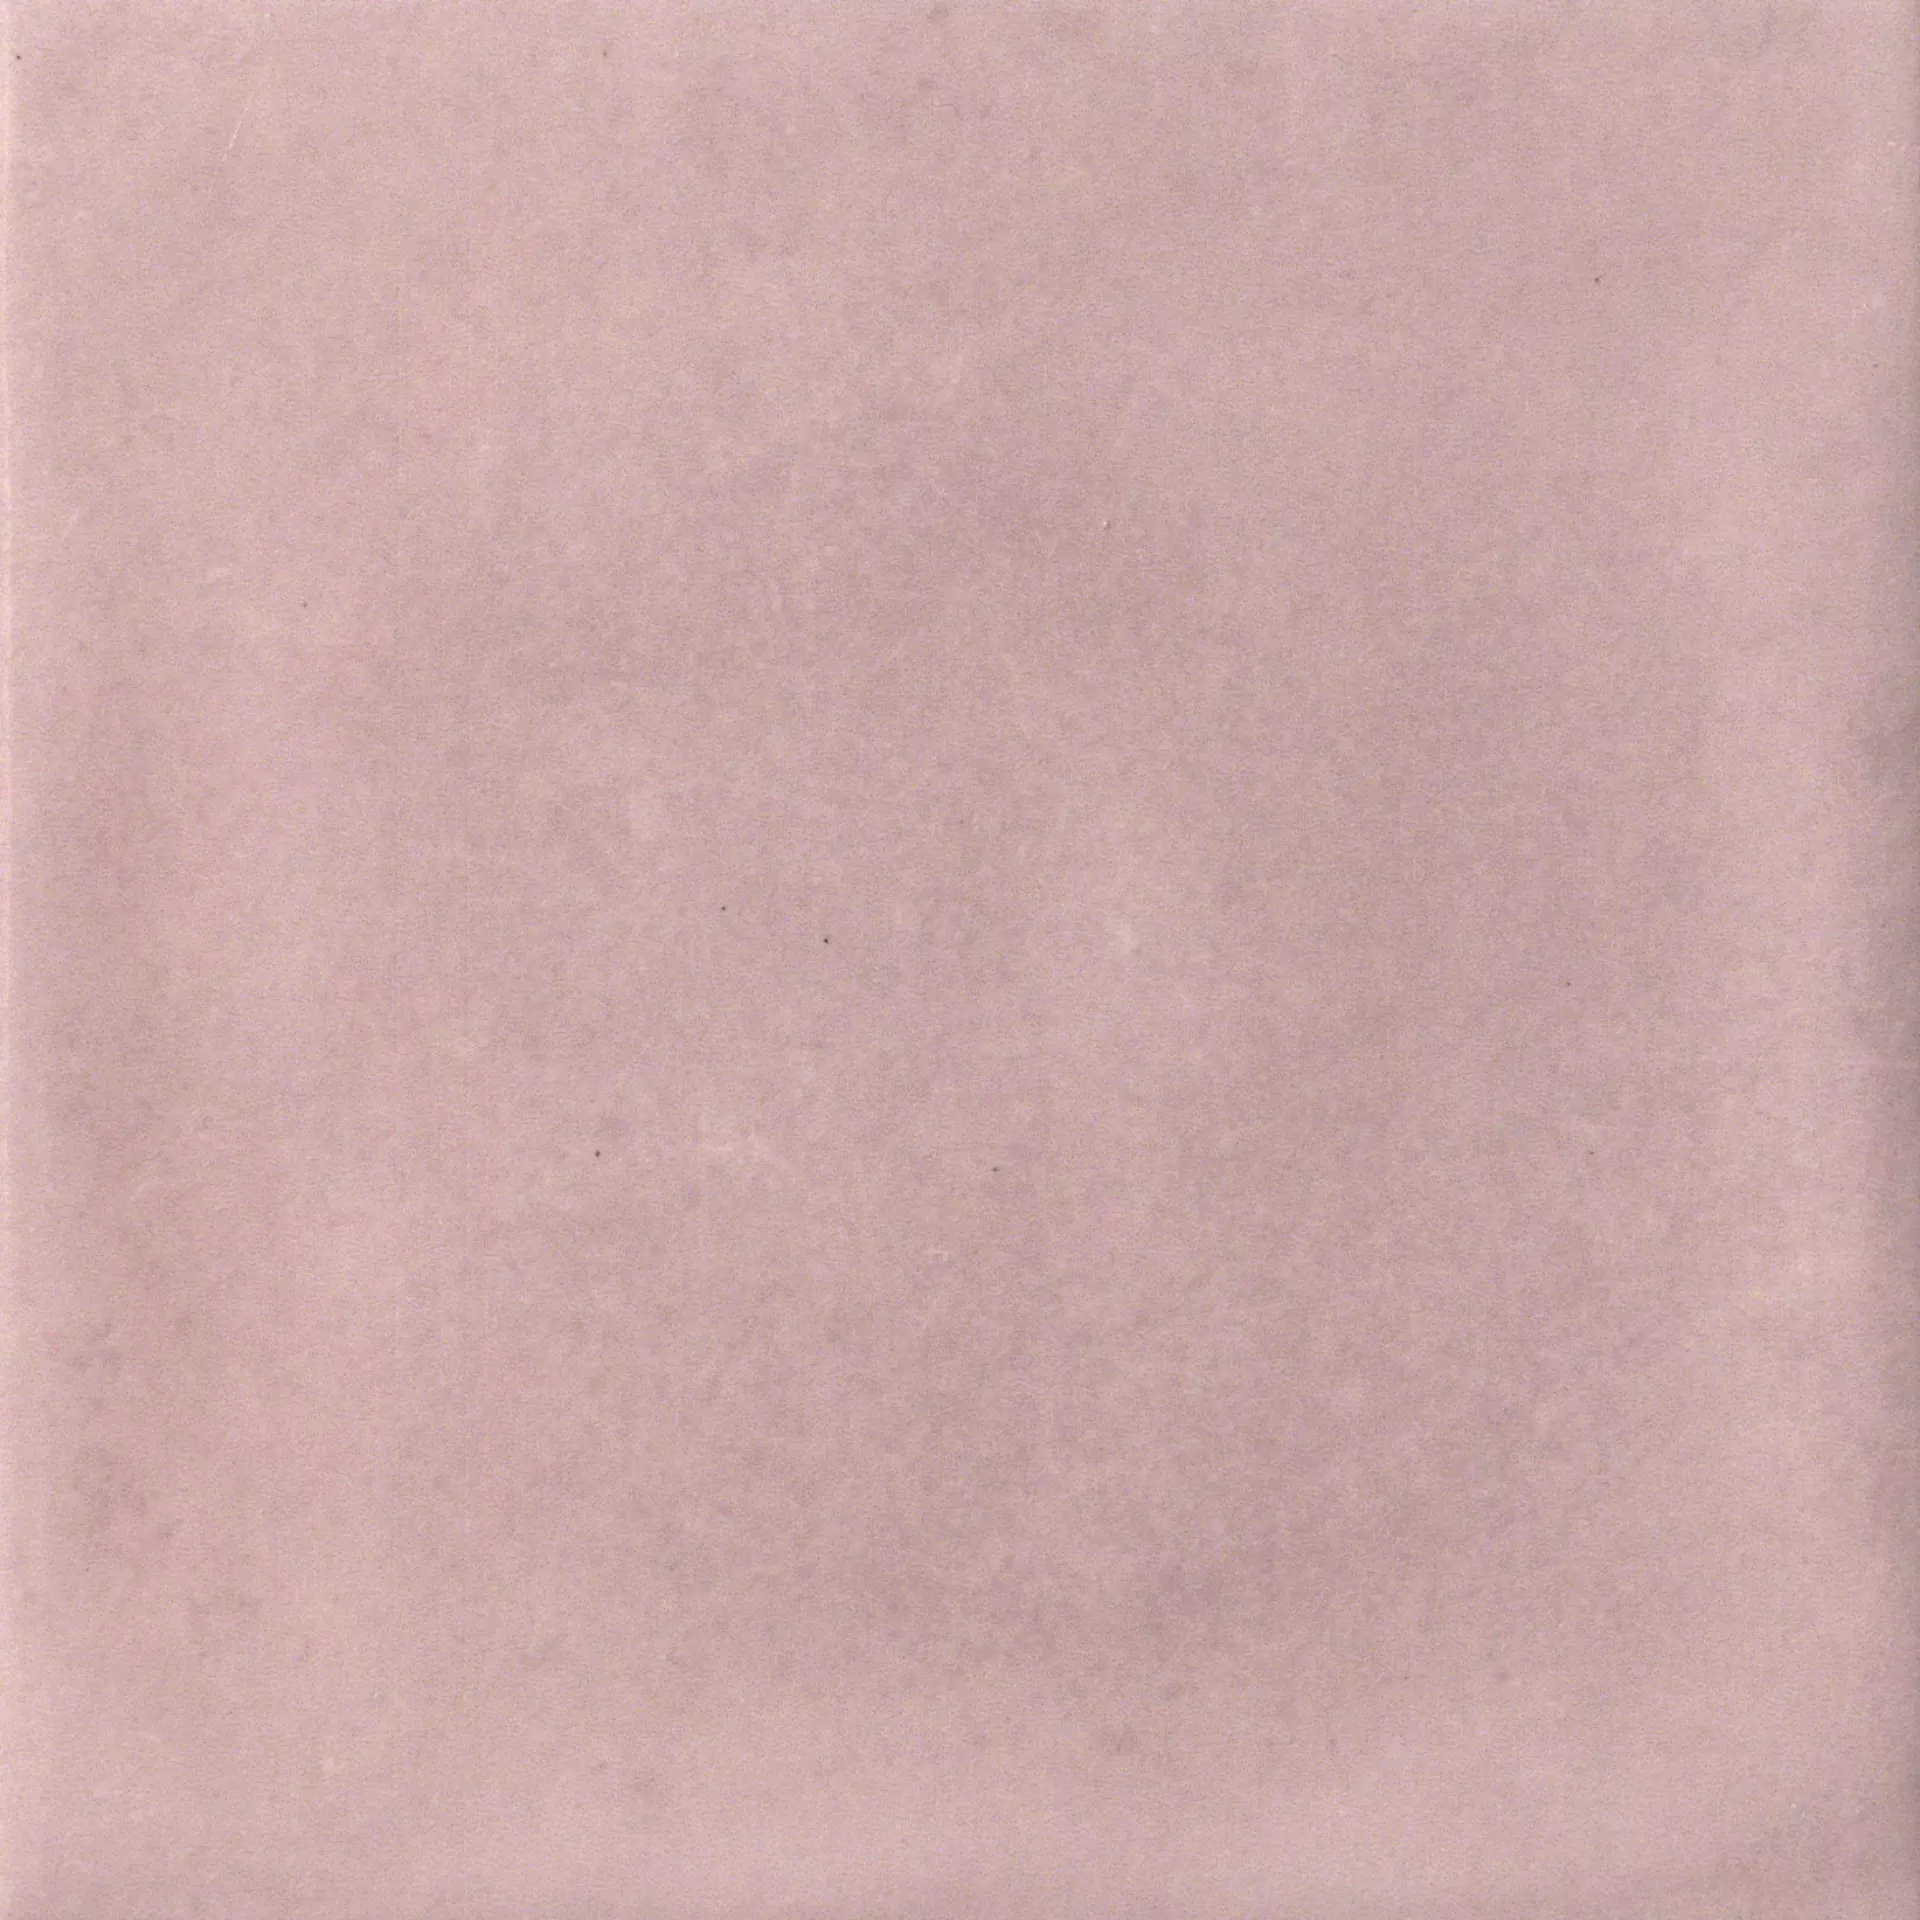 CIR Materia Prima Pink Velvet Naturale 1069775 20x20cm 10mm